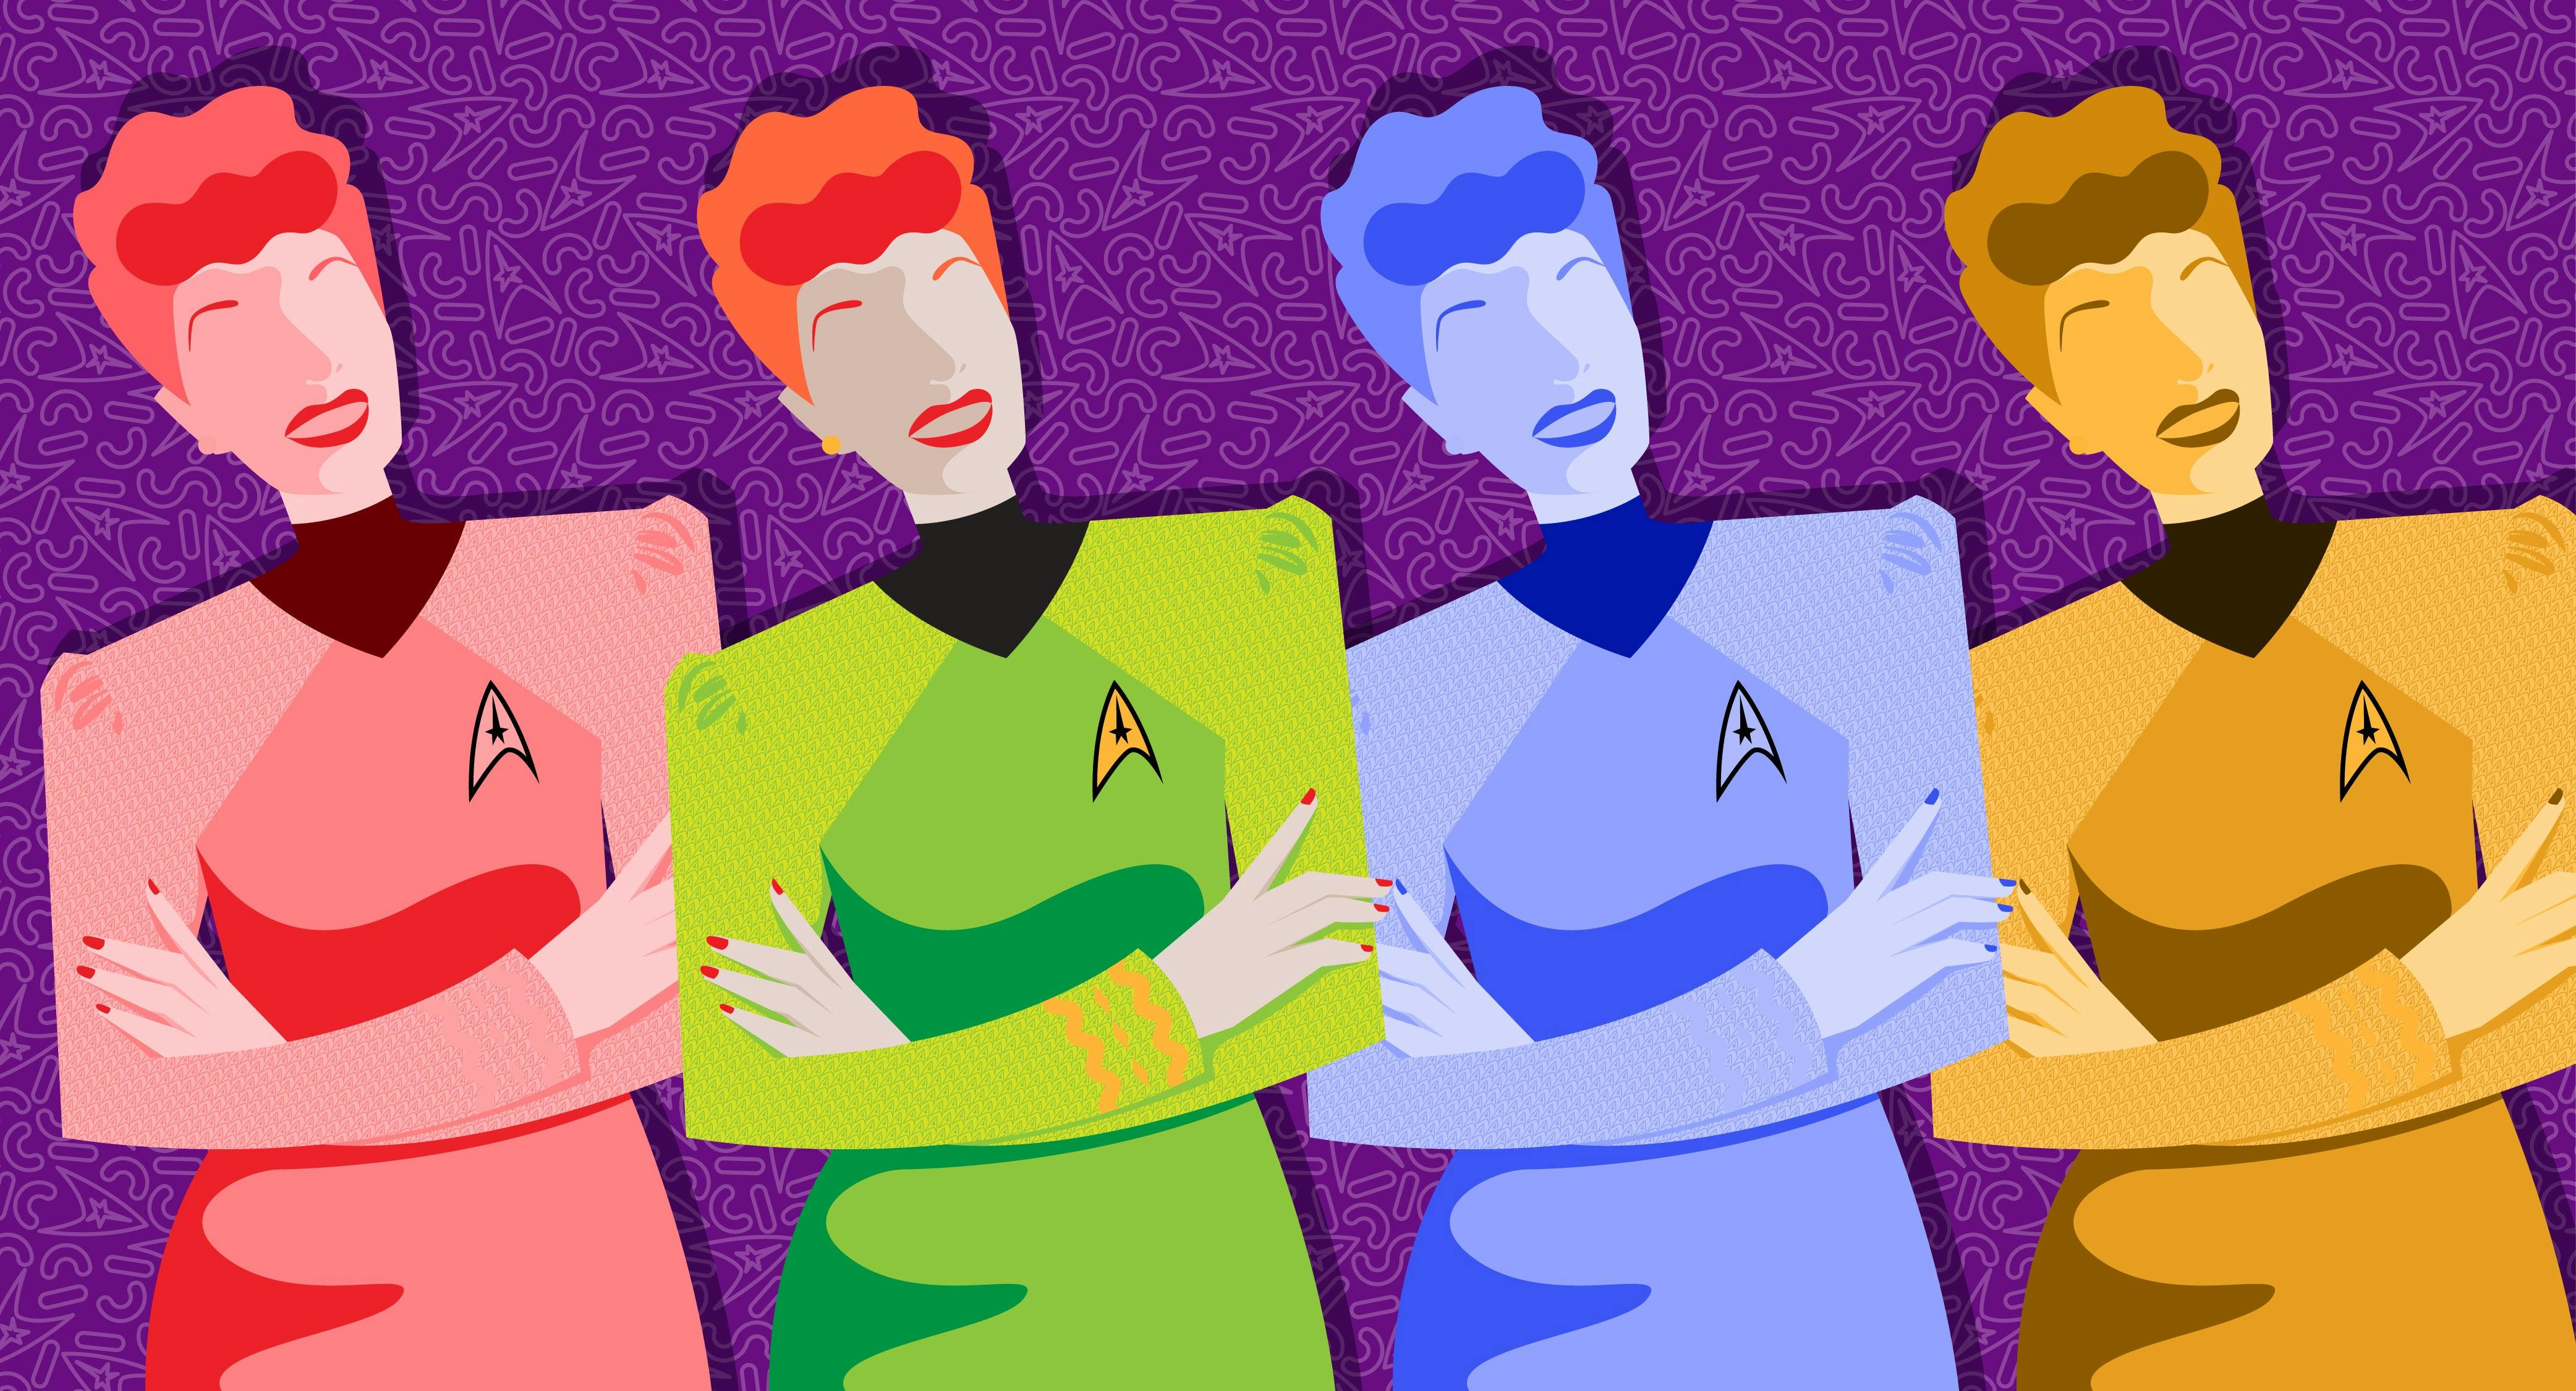 Illustration of Lucille Ball in Starfleet uniform